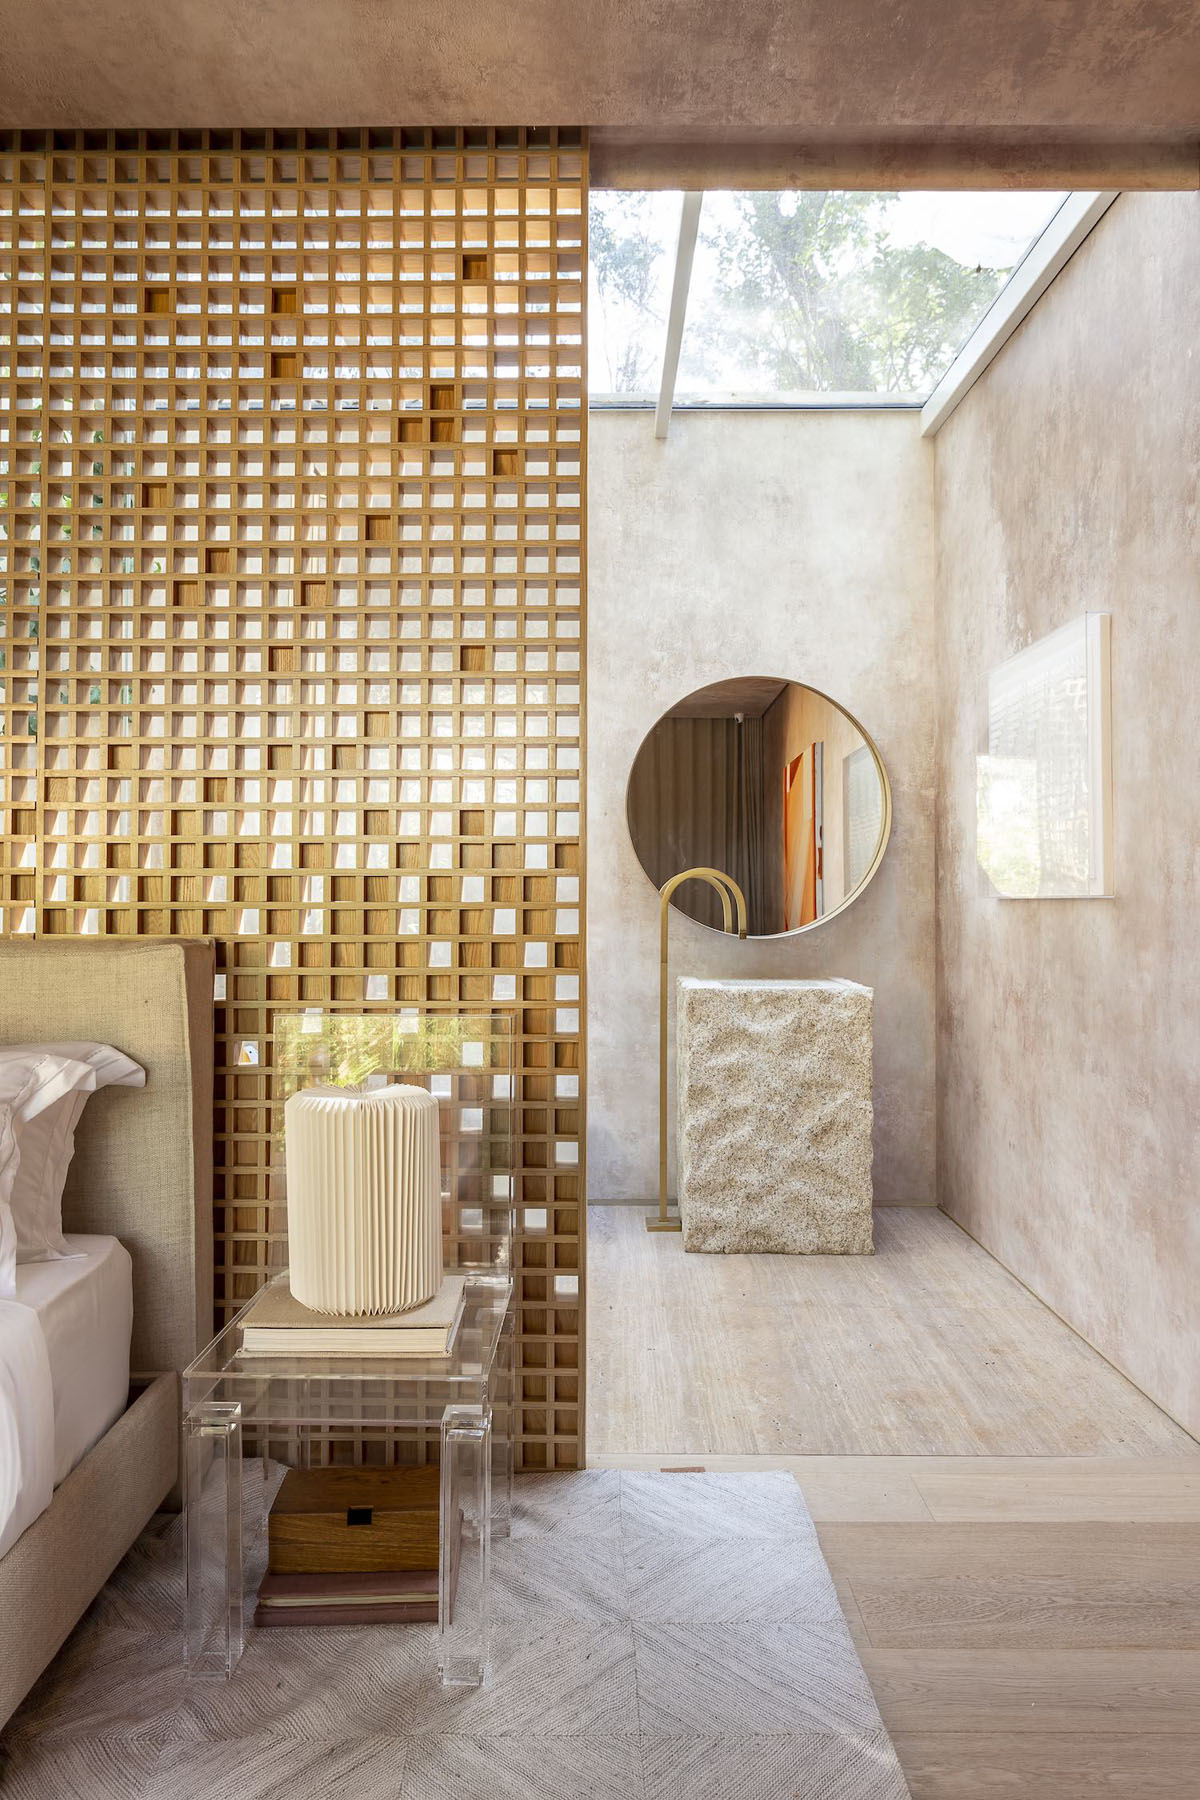 hình ảnh phòng tắm khép kín trong phòng ngủ nhà vườn với bồn rửa hình trụ bằng đá trắng